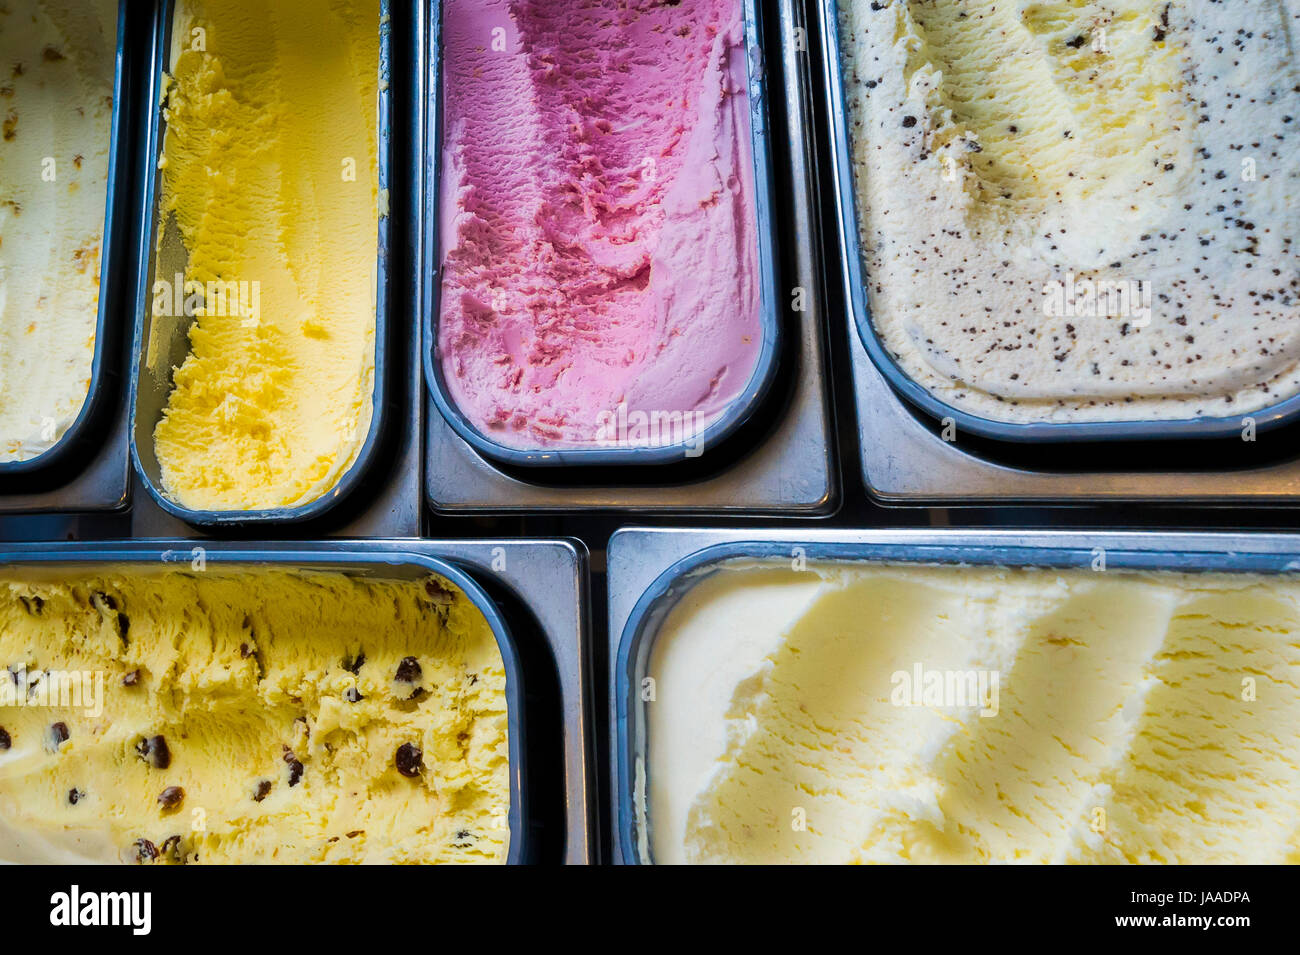 En vista cenital de tinas de diferentes sabores de helados Foto de stock